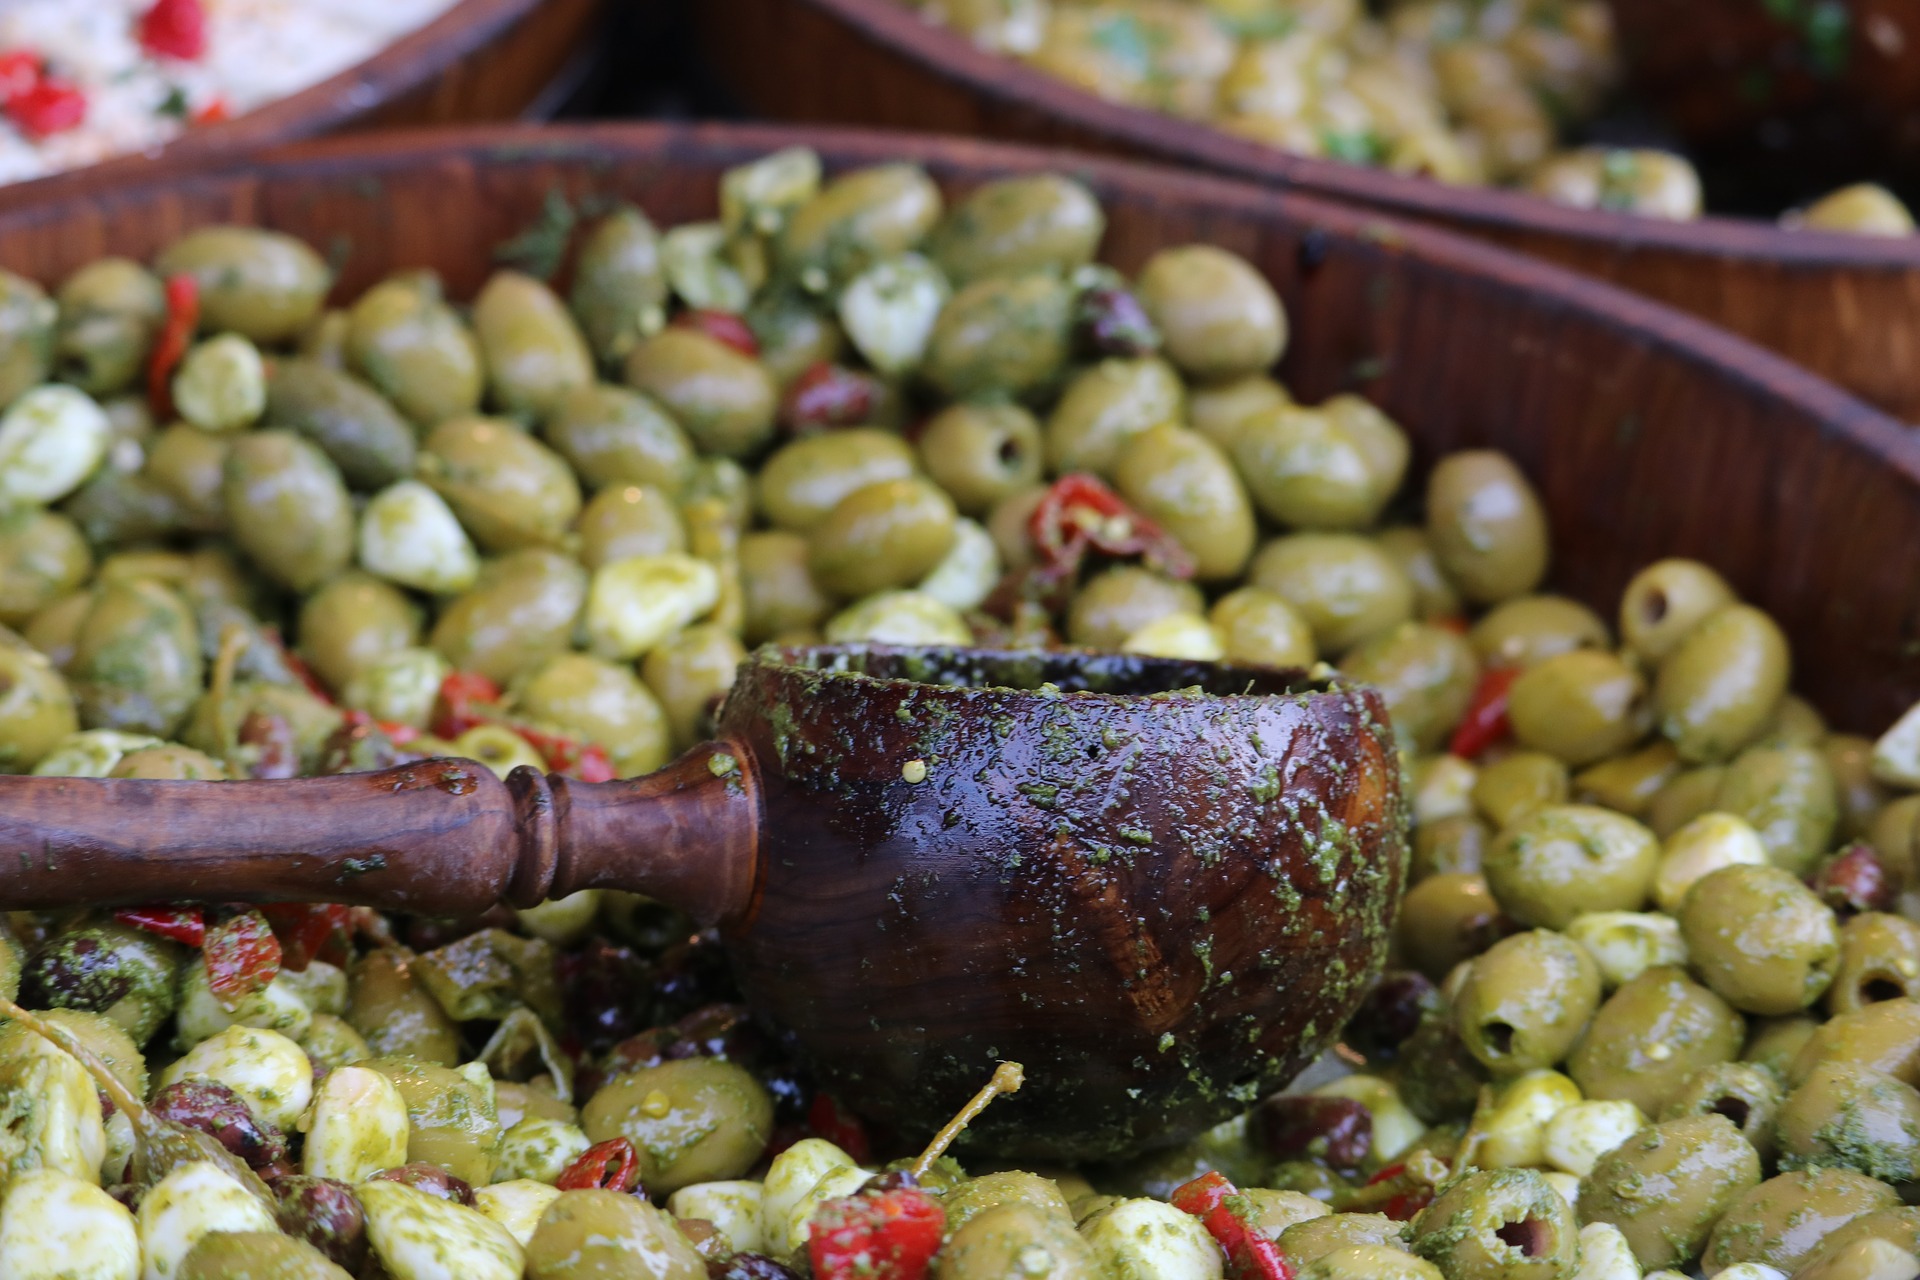 olive schiacciate sottolio